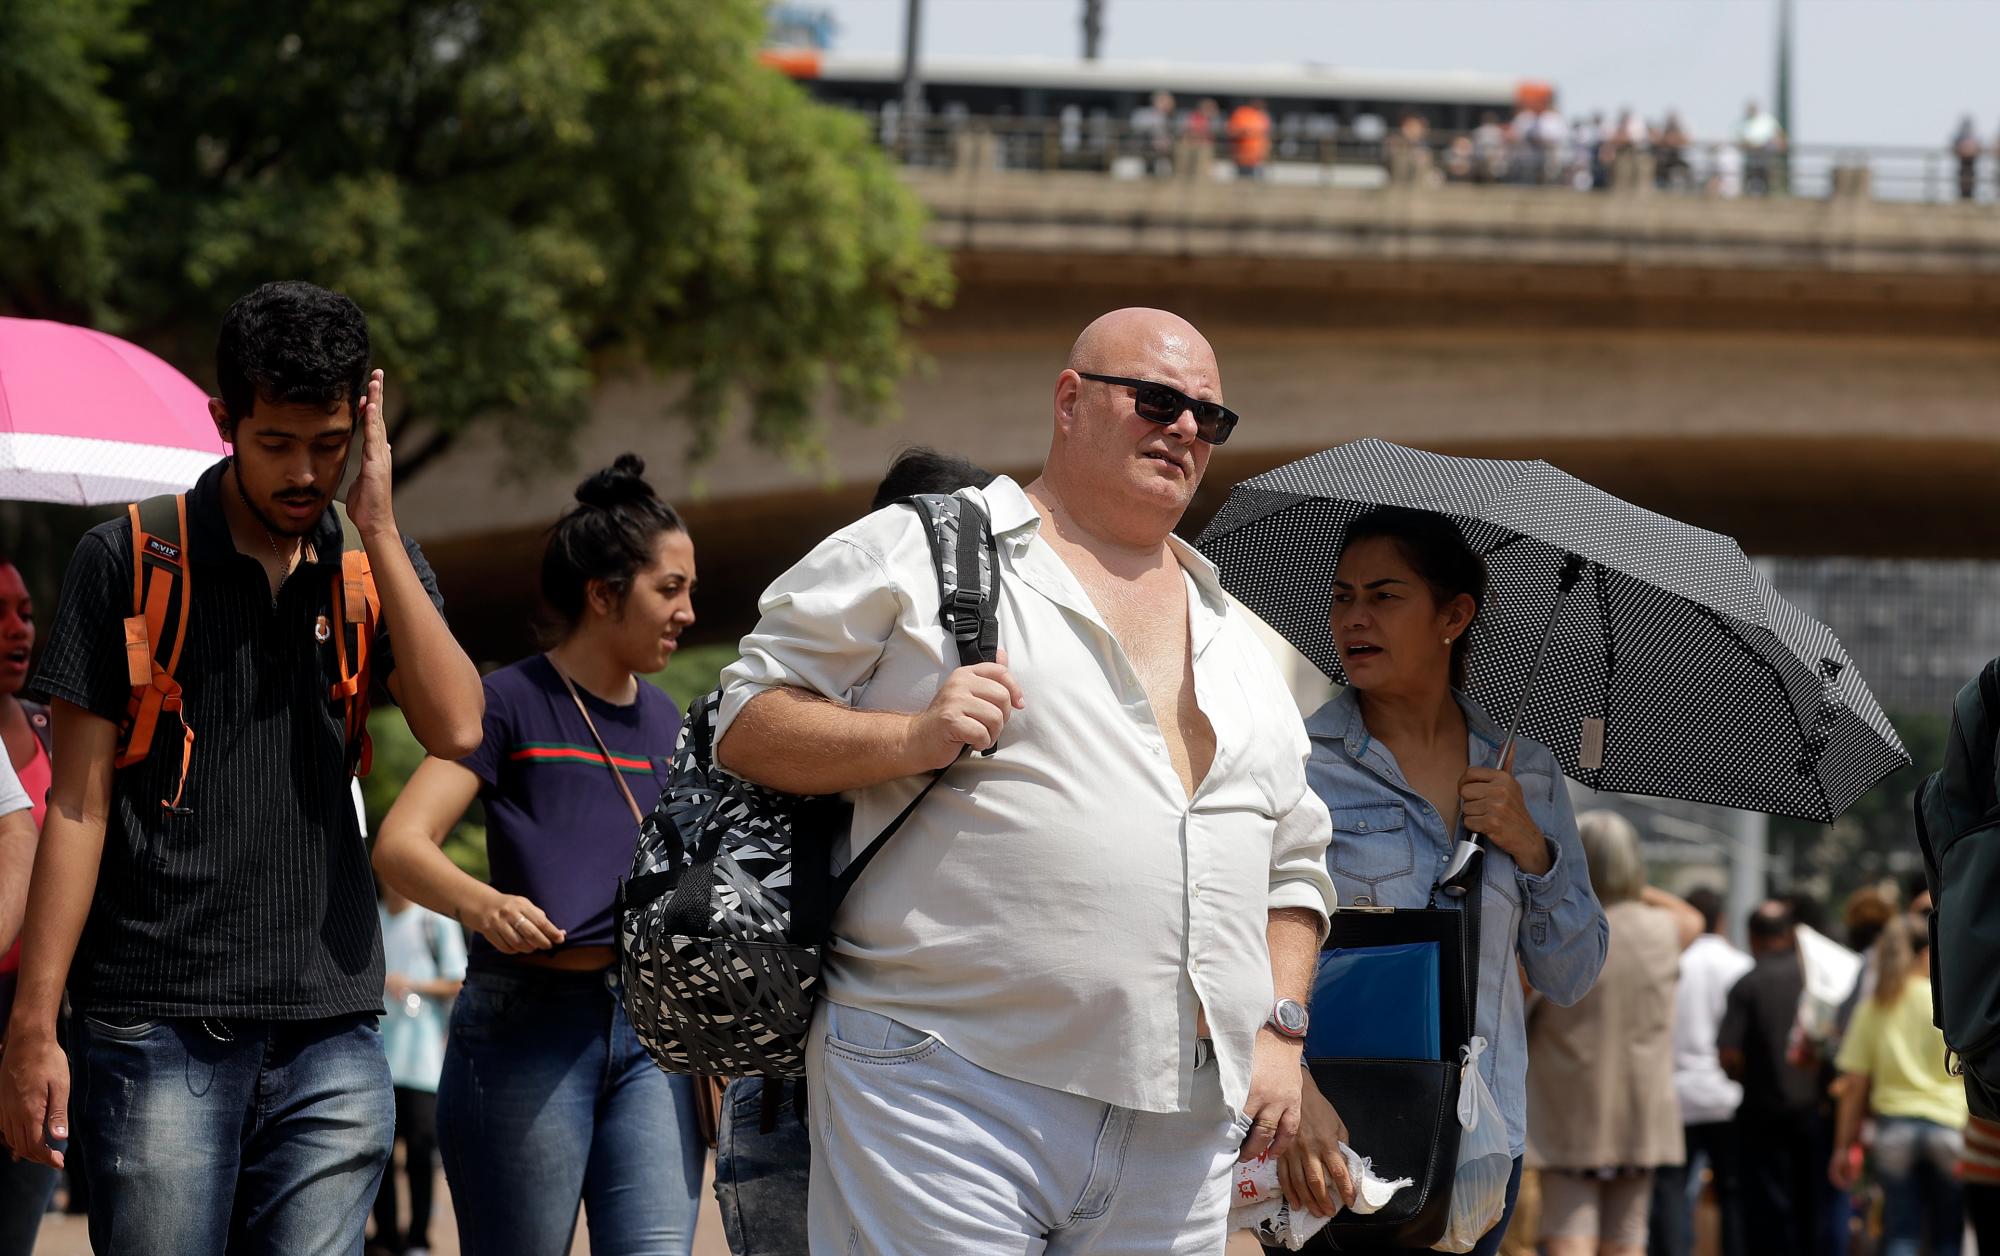 Ronaldo Borelli, de 54 años, que ha estado subcontratado durante ocho meses, está en la fila para asistir a una feria de trabajo organizada por el gobierno local y un sindicato, en el centro de Sao Paulo, Brasil, el martes 26 de marzo de 2019.